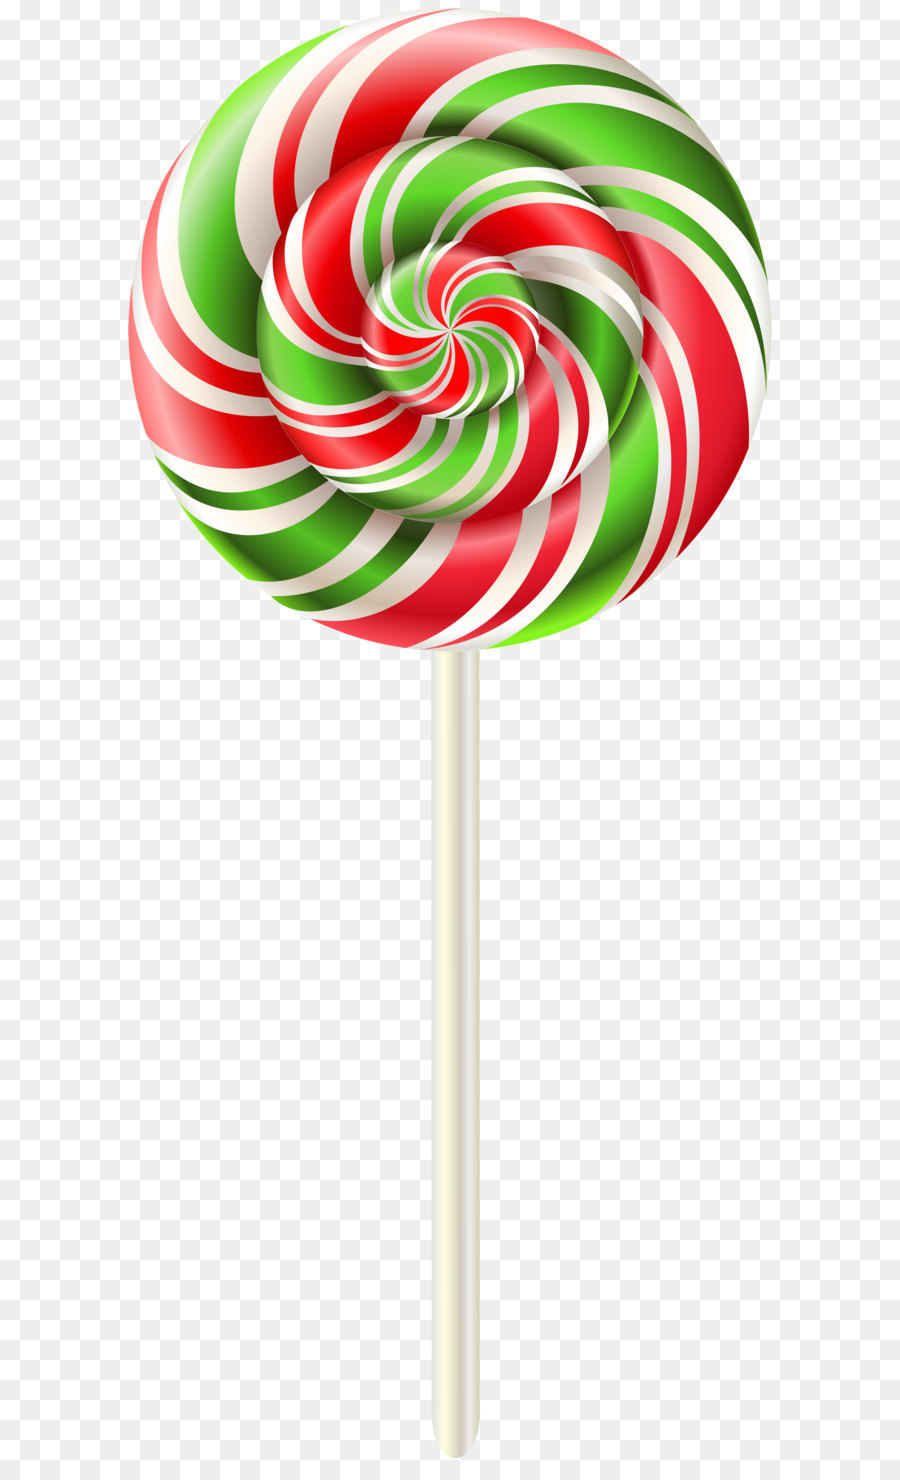 Lollipop Clip art - Rainbow Swirl Lollipop Transparent PNG Clip Art Image png download - 3548*8000 - Free Transparent Lollipop png Download.